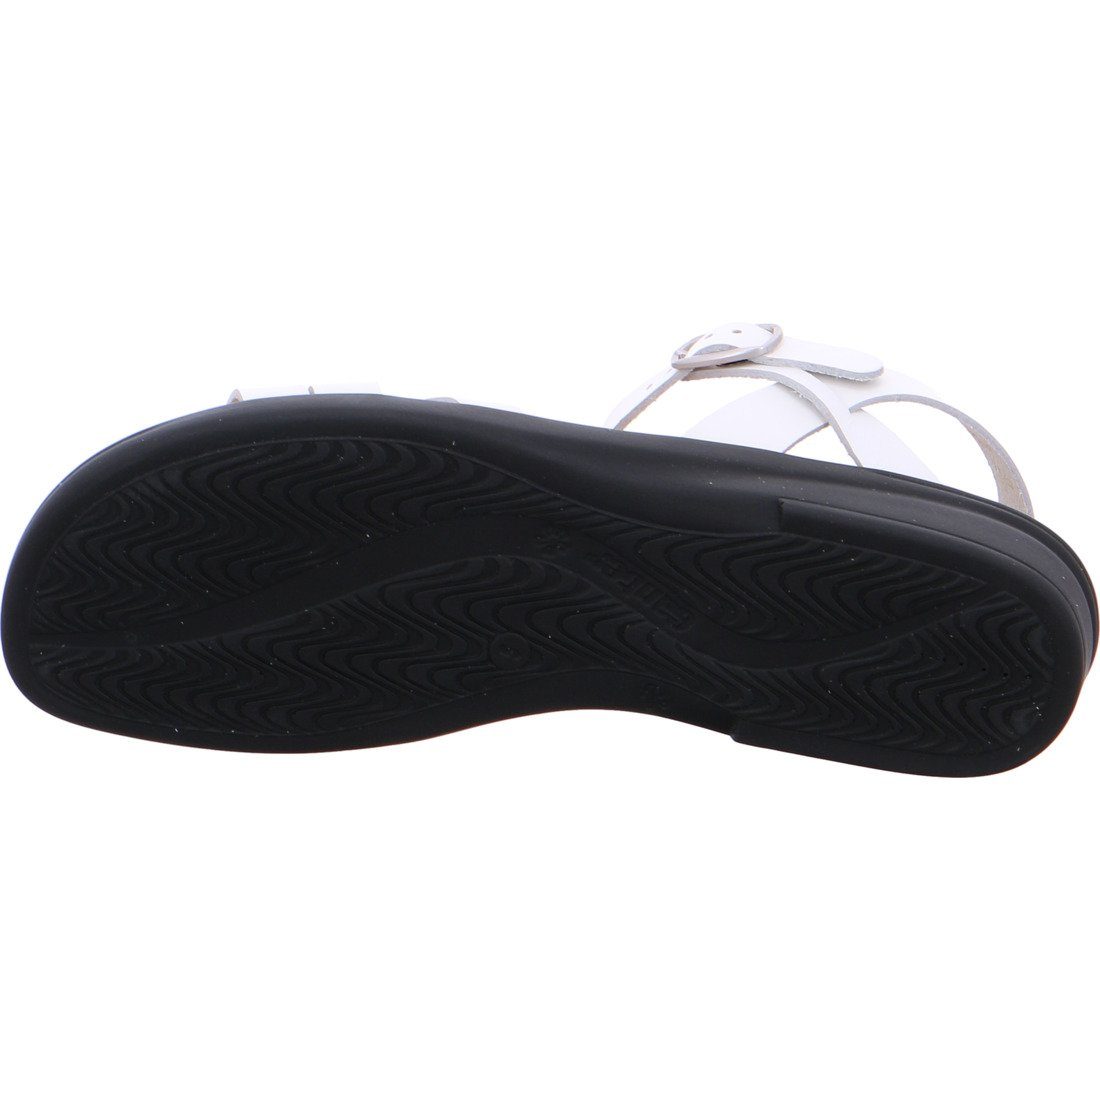 Sonnica Sandalette Damen Ganter - Schuhe, 033403 Ganter Leder weiß Sandalette